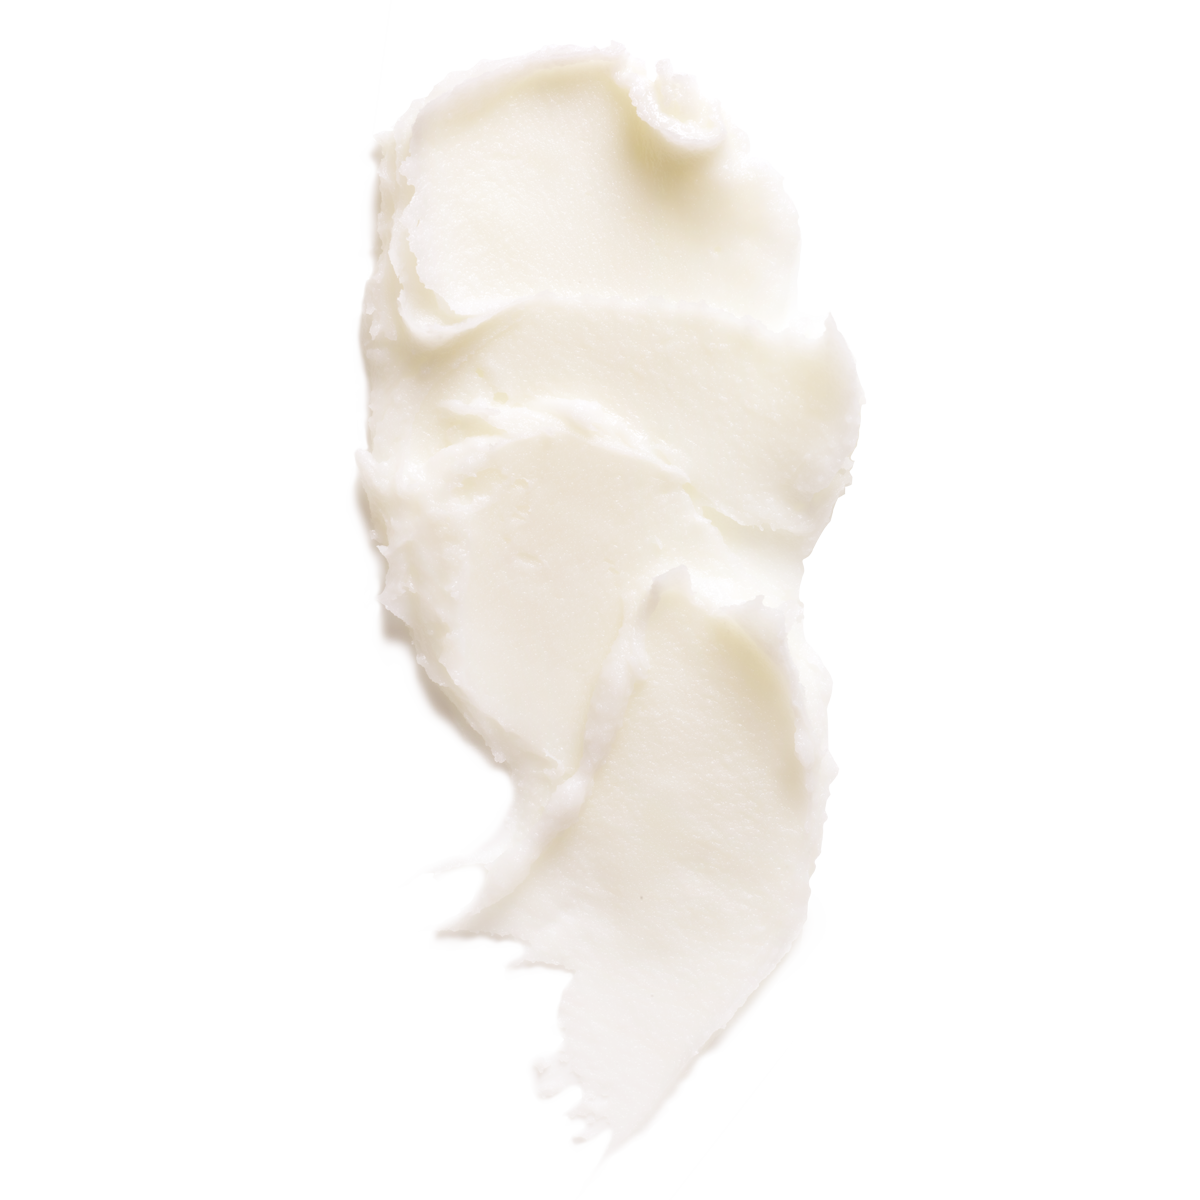 L'Occitane Organic-Certified Pure Shea Butter